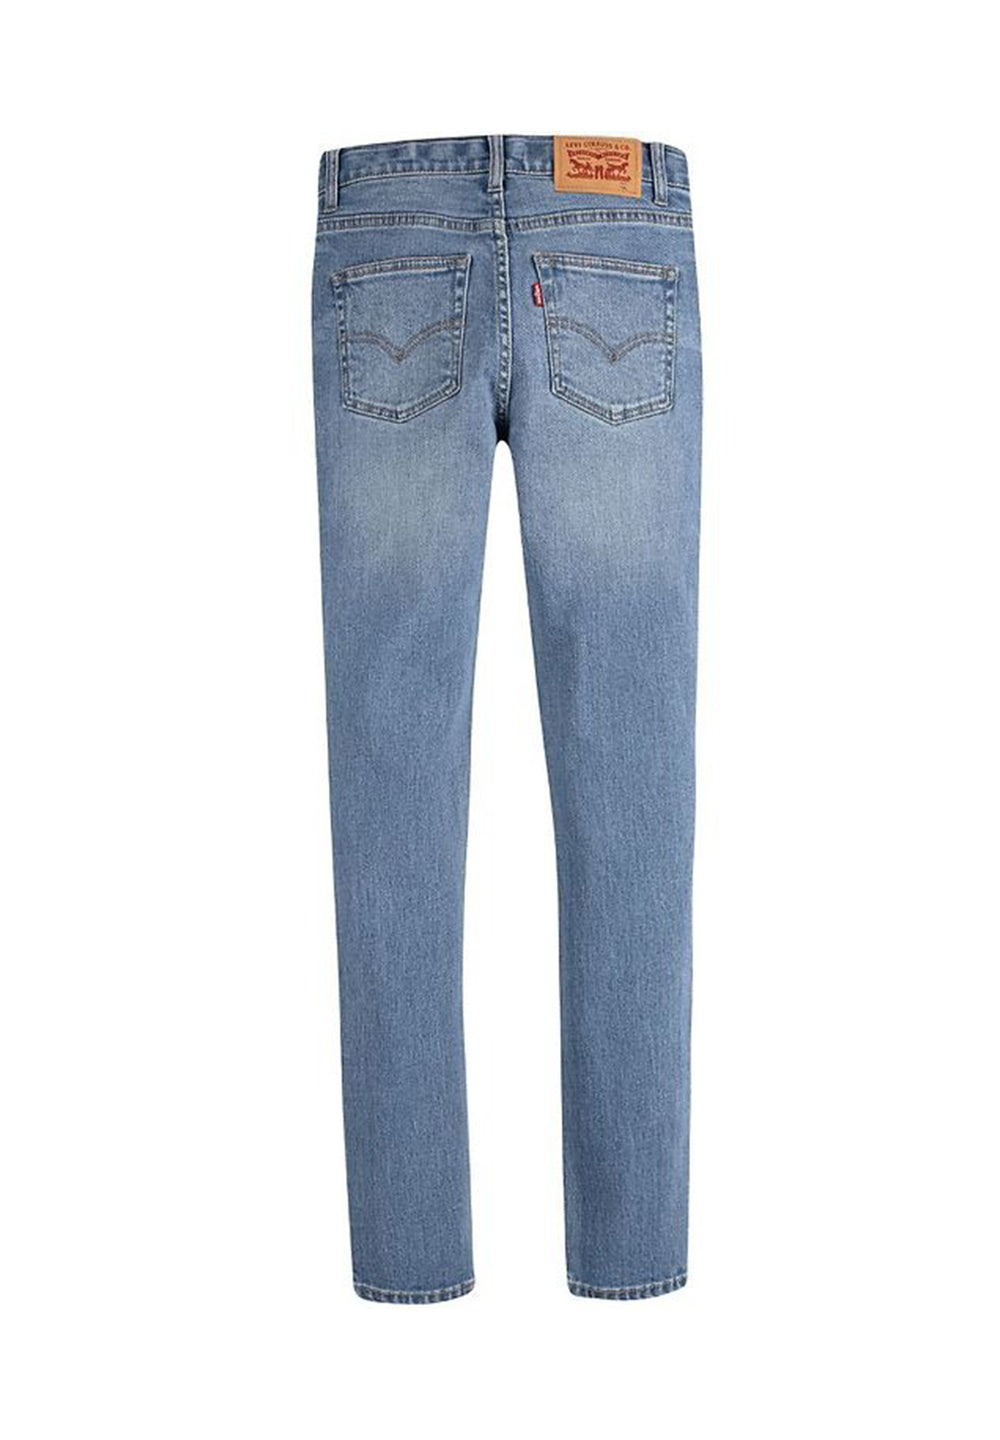 Blue denim jeans for boy